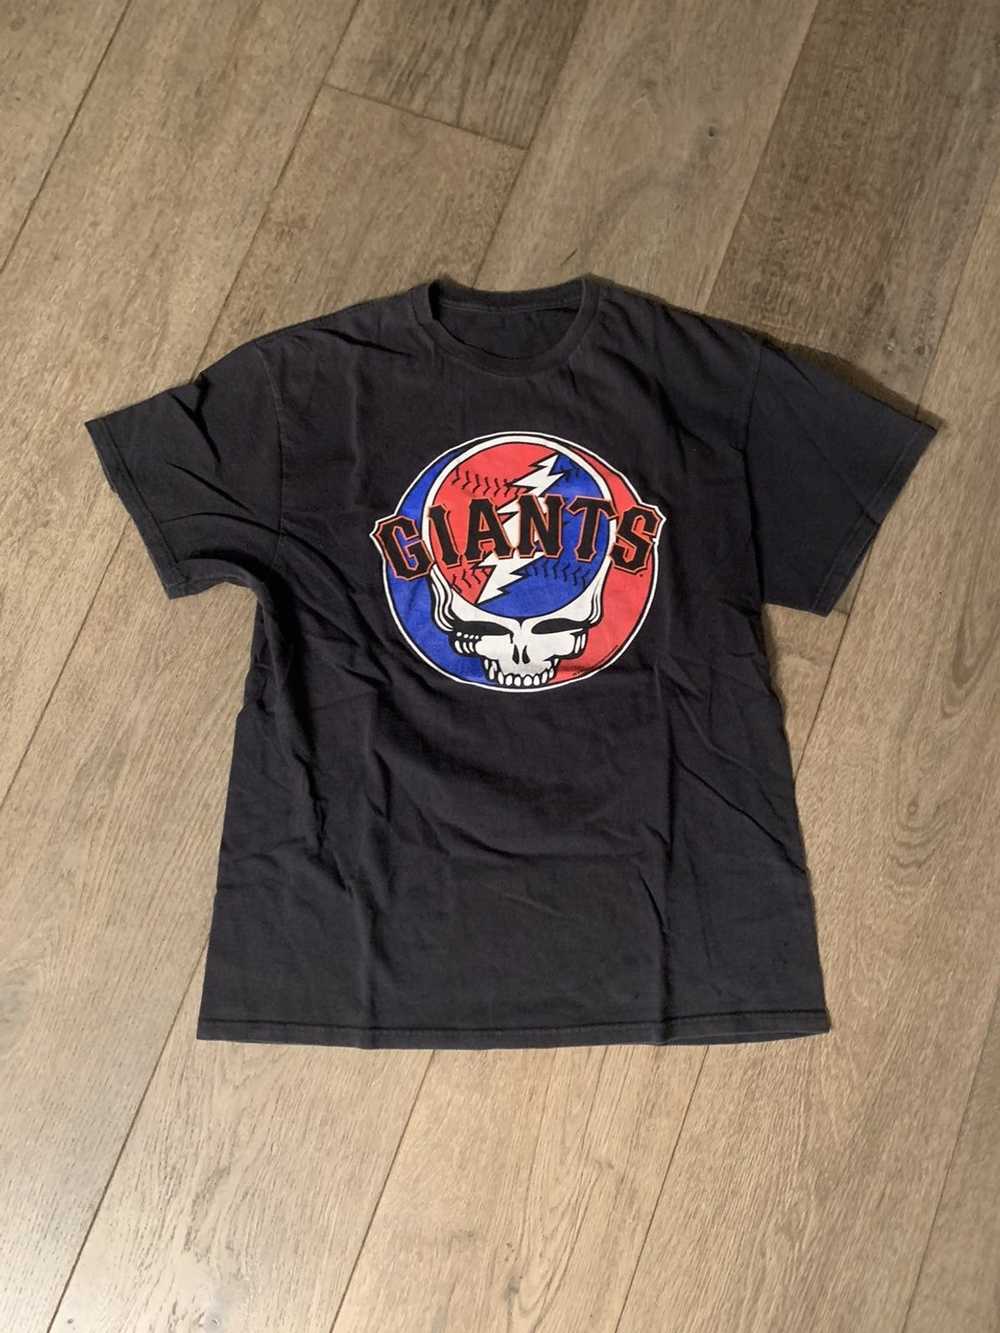 Official mlb X Grateful Dead X Giants Bear shirt, hoodie